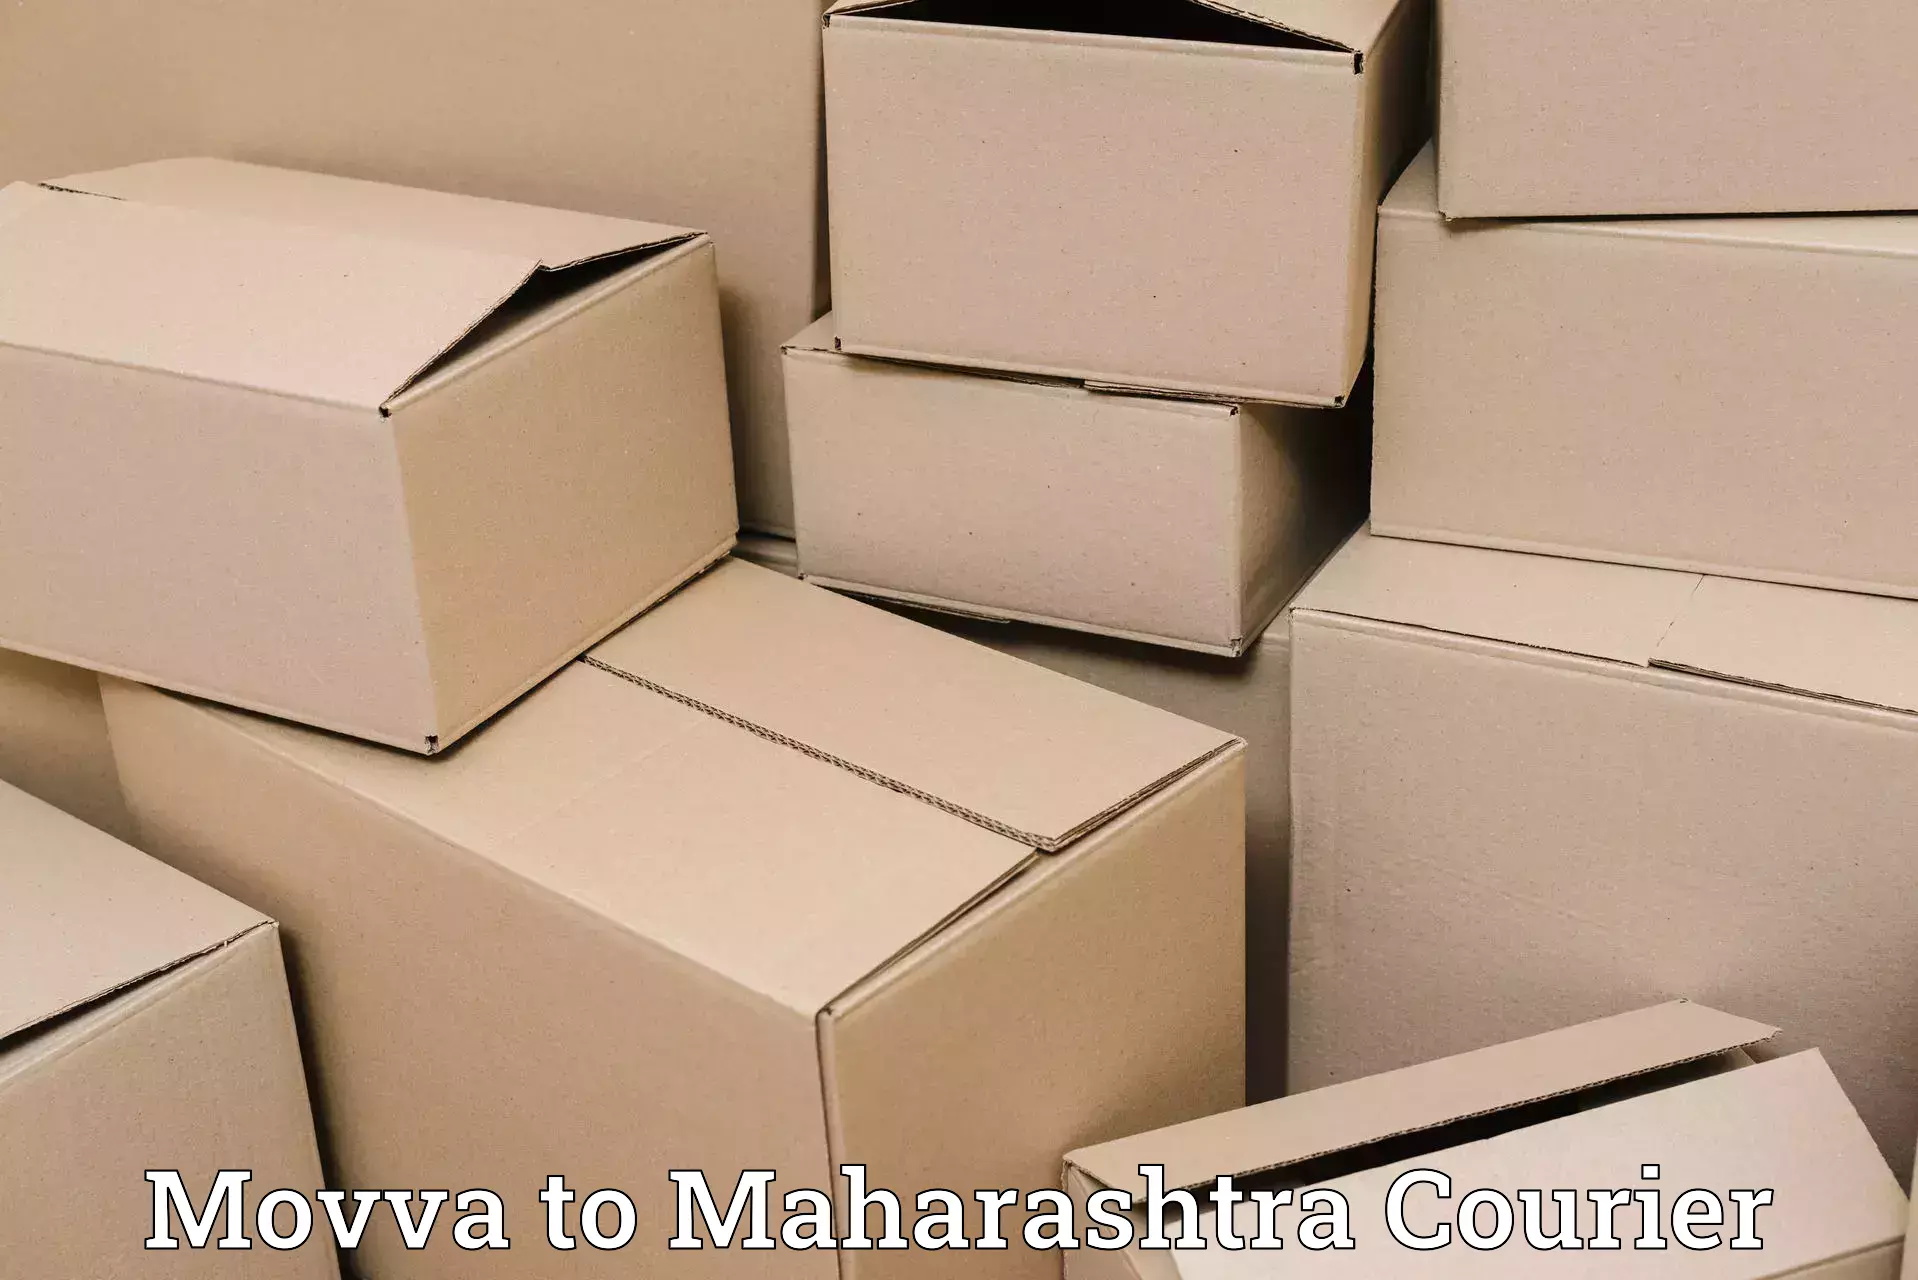 Express mail service Movva to Maharashtra